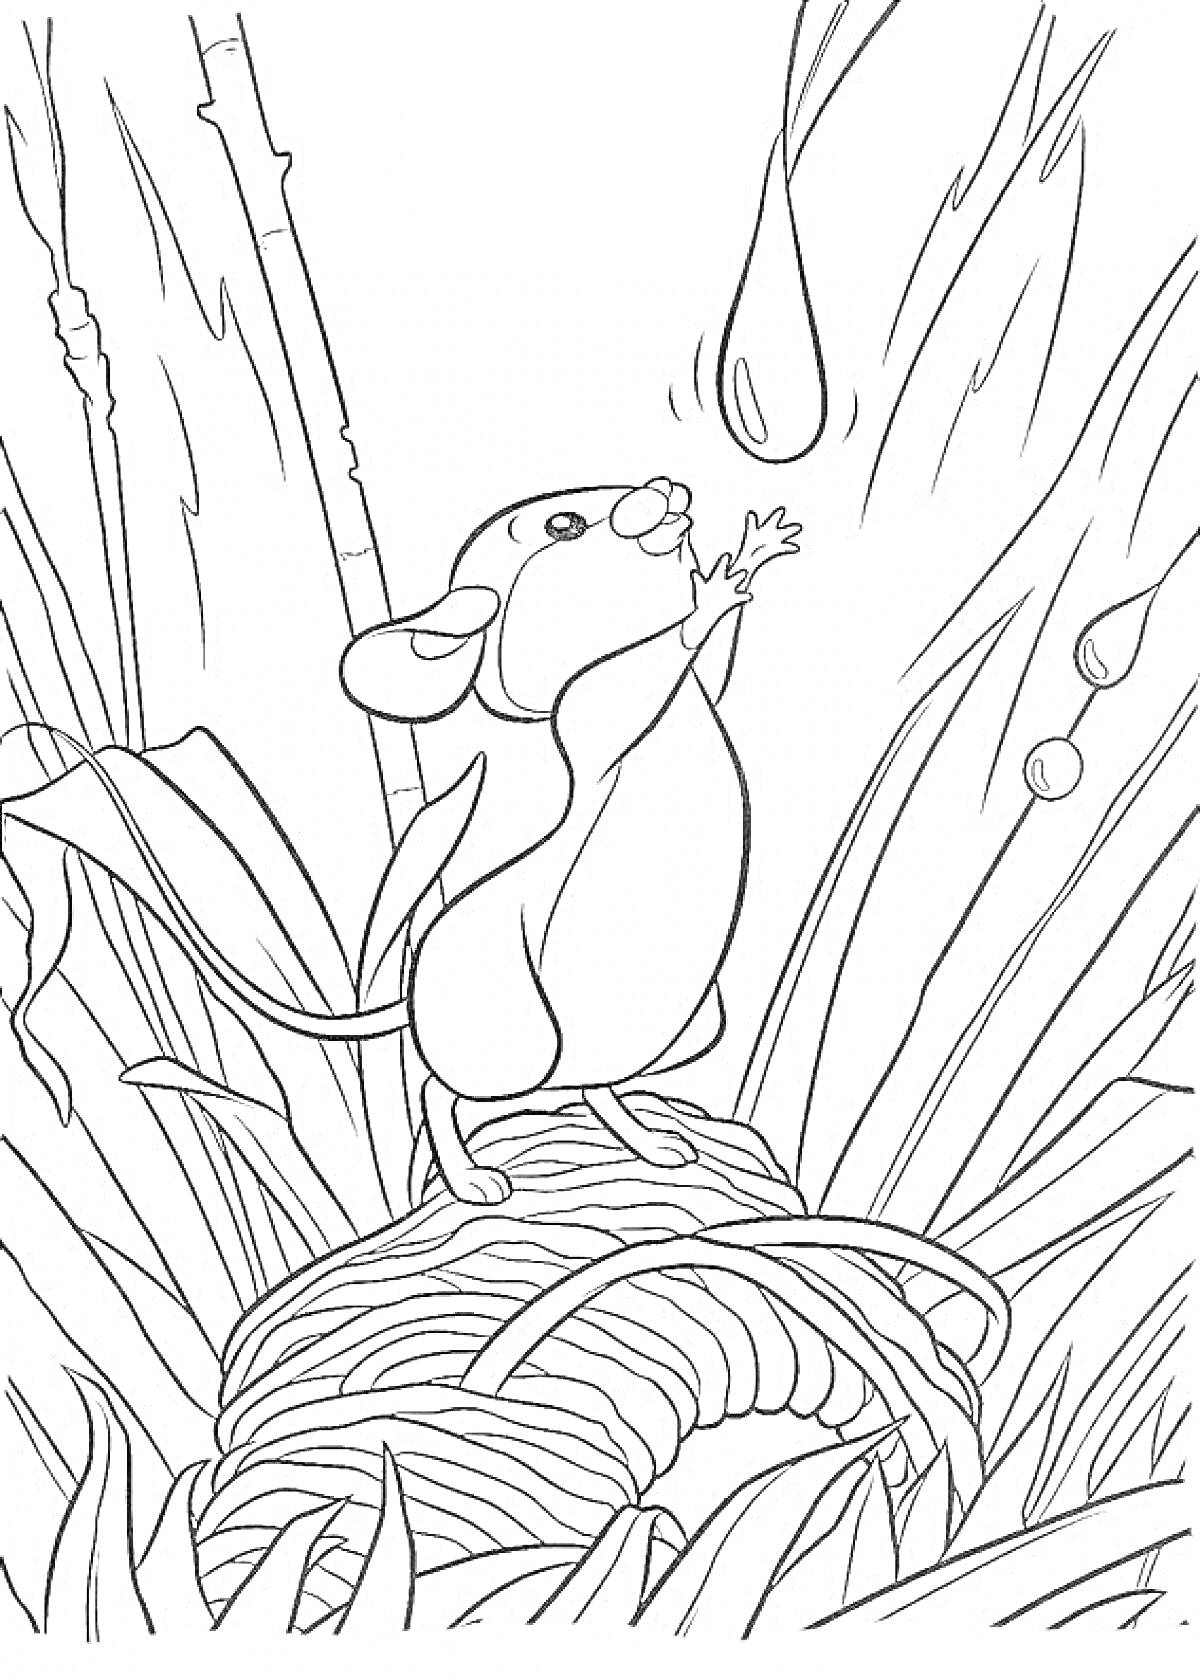 Раскраска Мышонок Пик на травяной подстилке тянется к капле воды